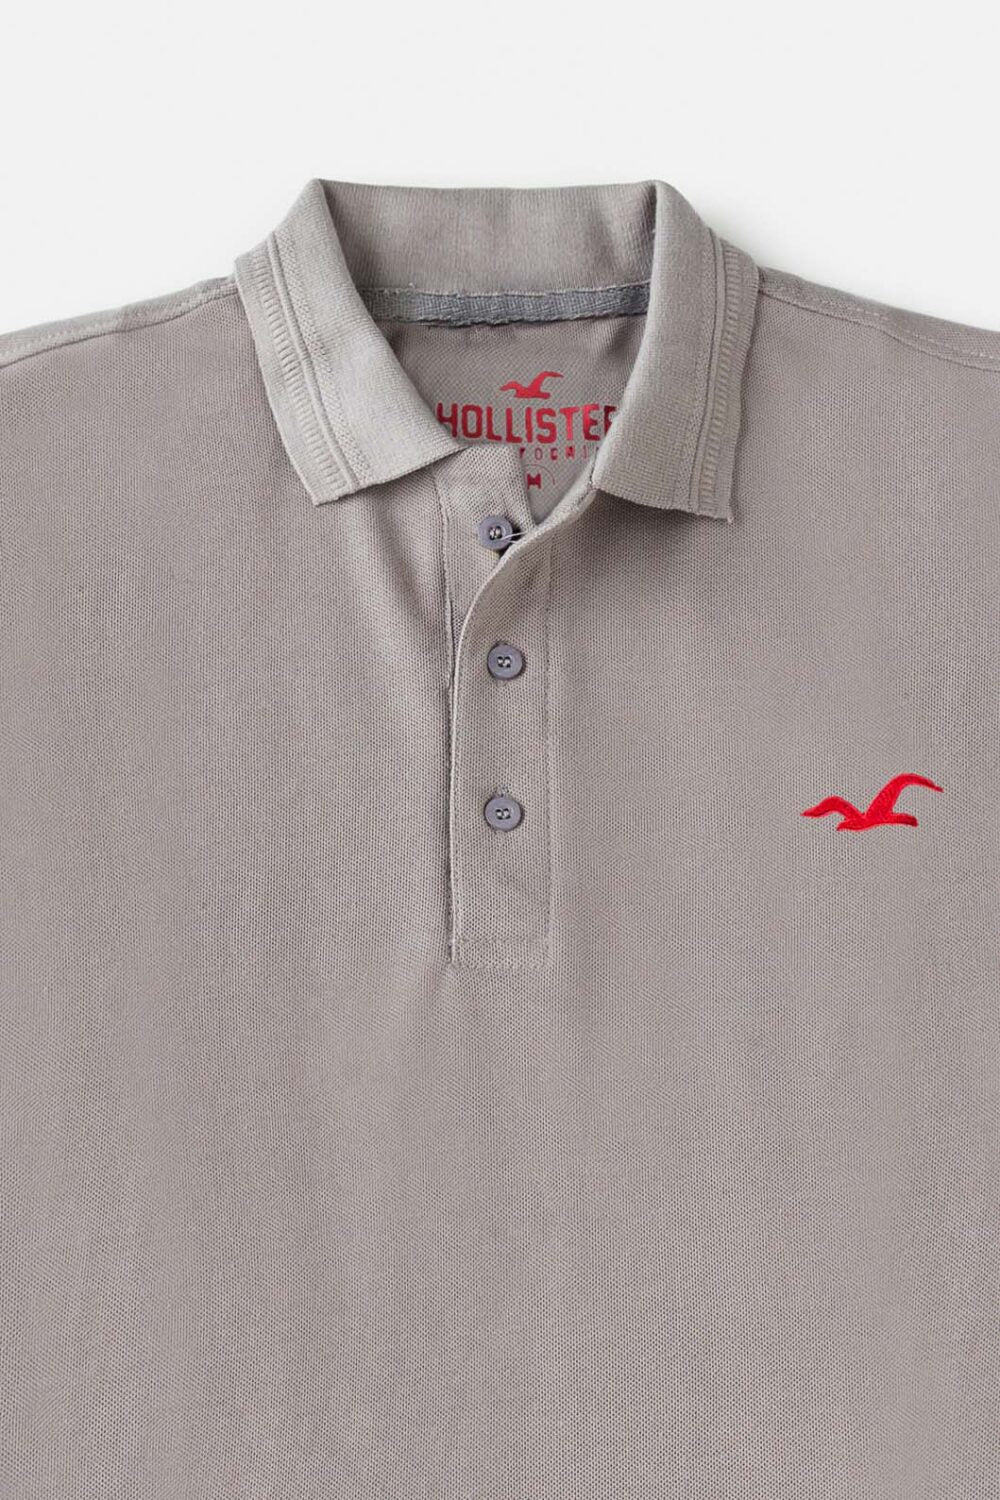 Holister Cotton Pique Polo Shirt – American Silver